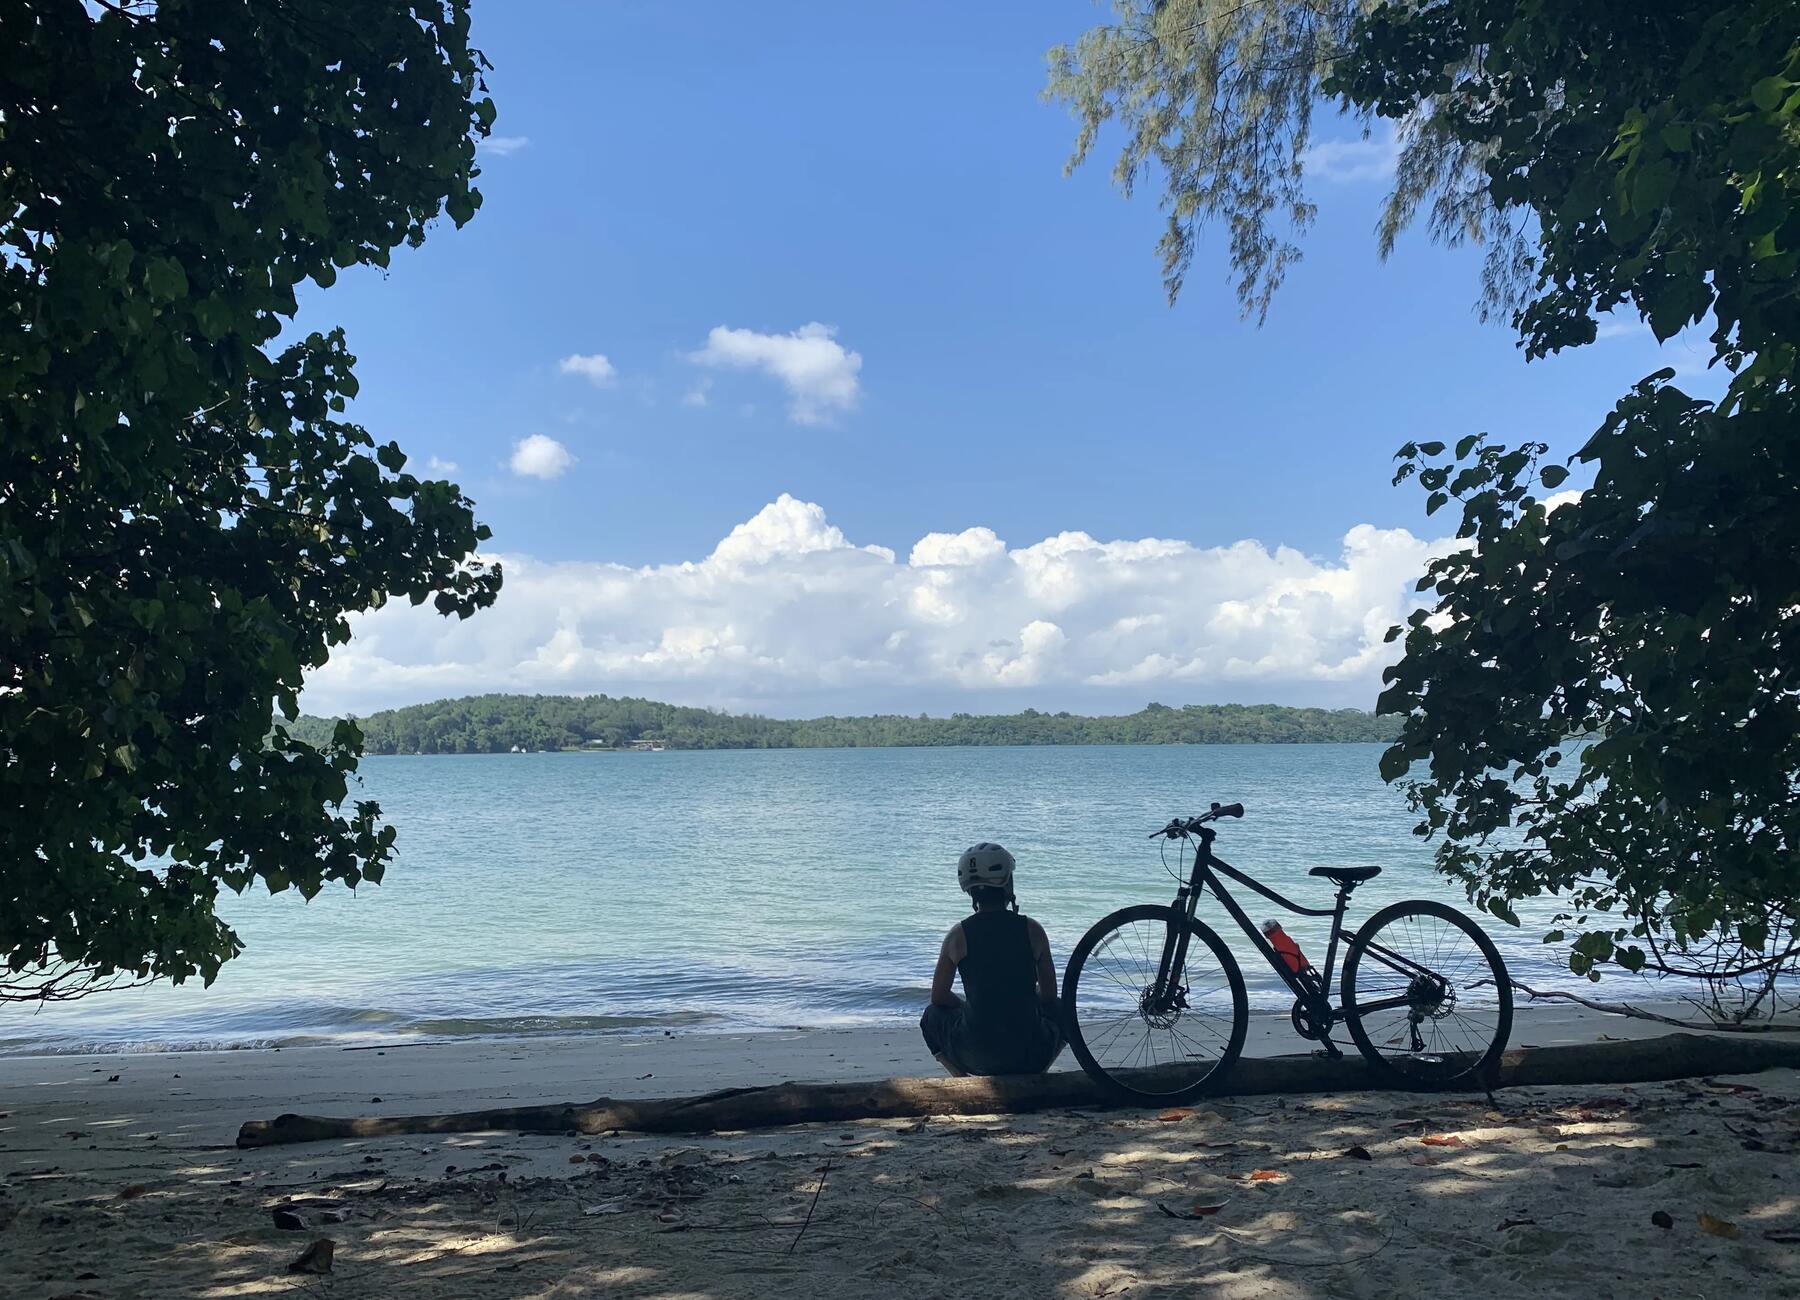 osoba w stroju rowerowym siedząca na plaży przy rowerze